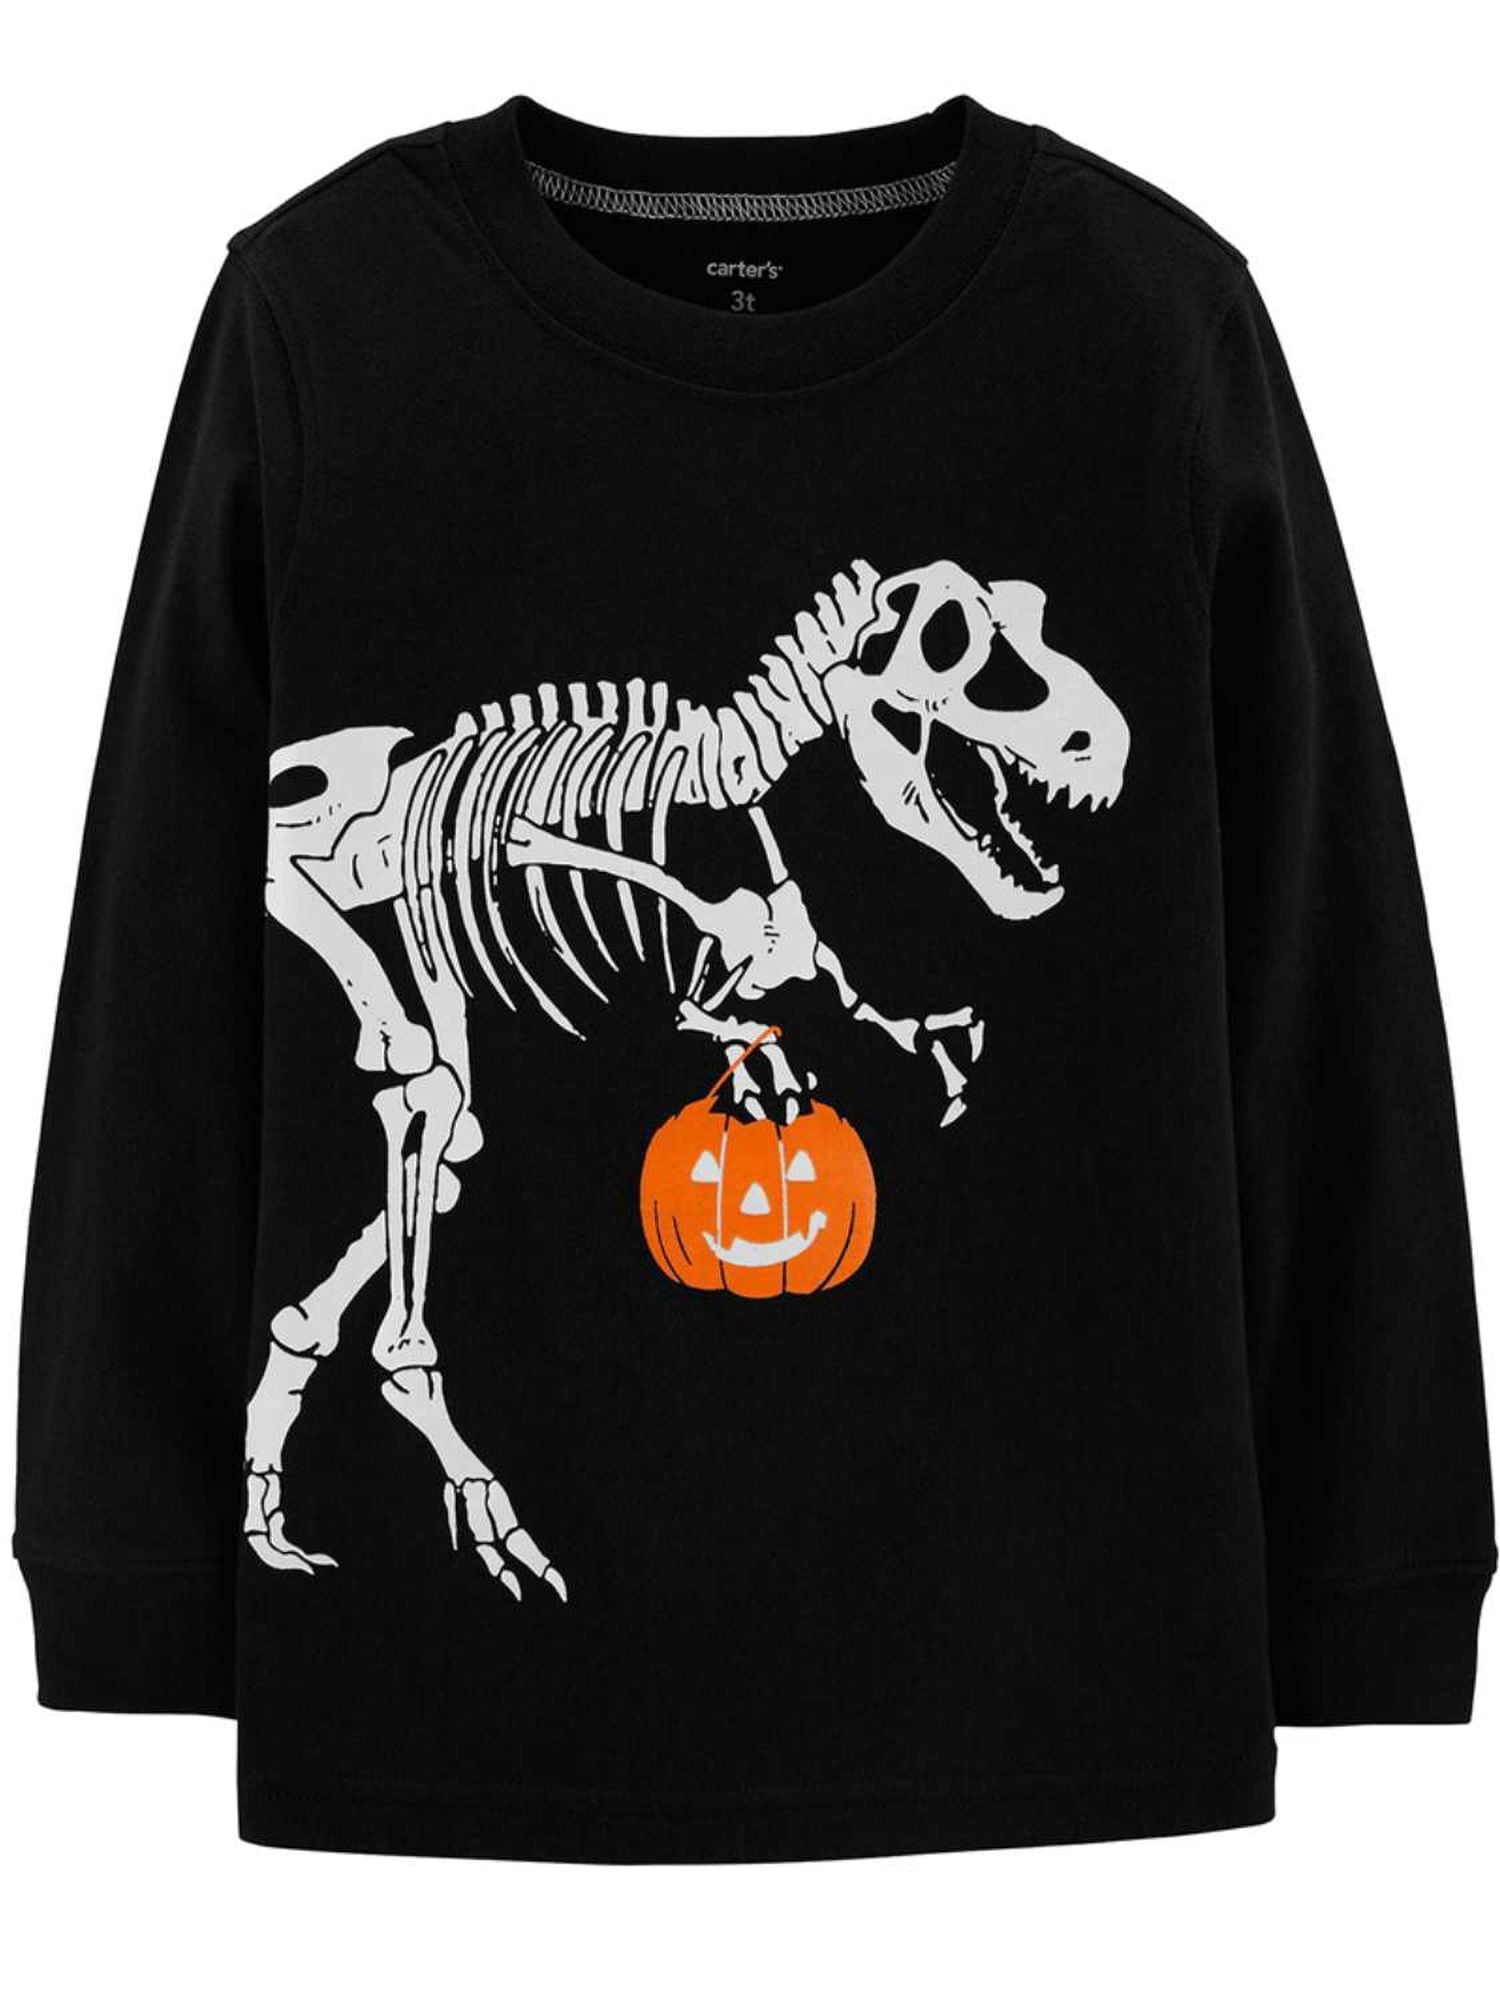 Infant & Toddler Boys Black Halloween Skeleton Long Sleeve Shirt